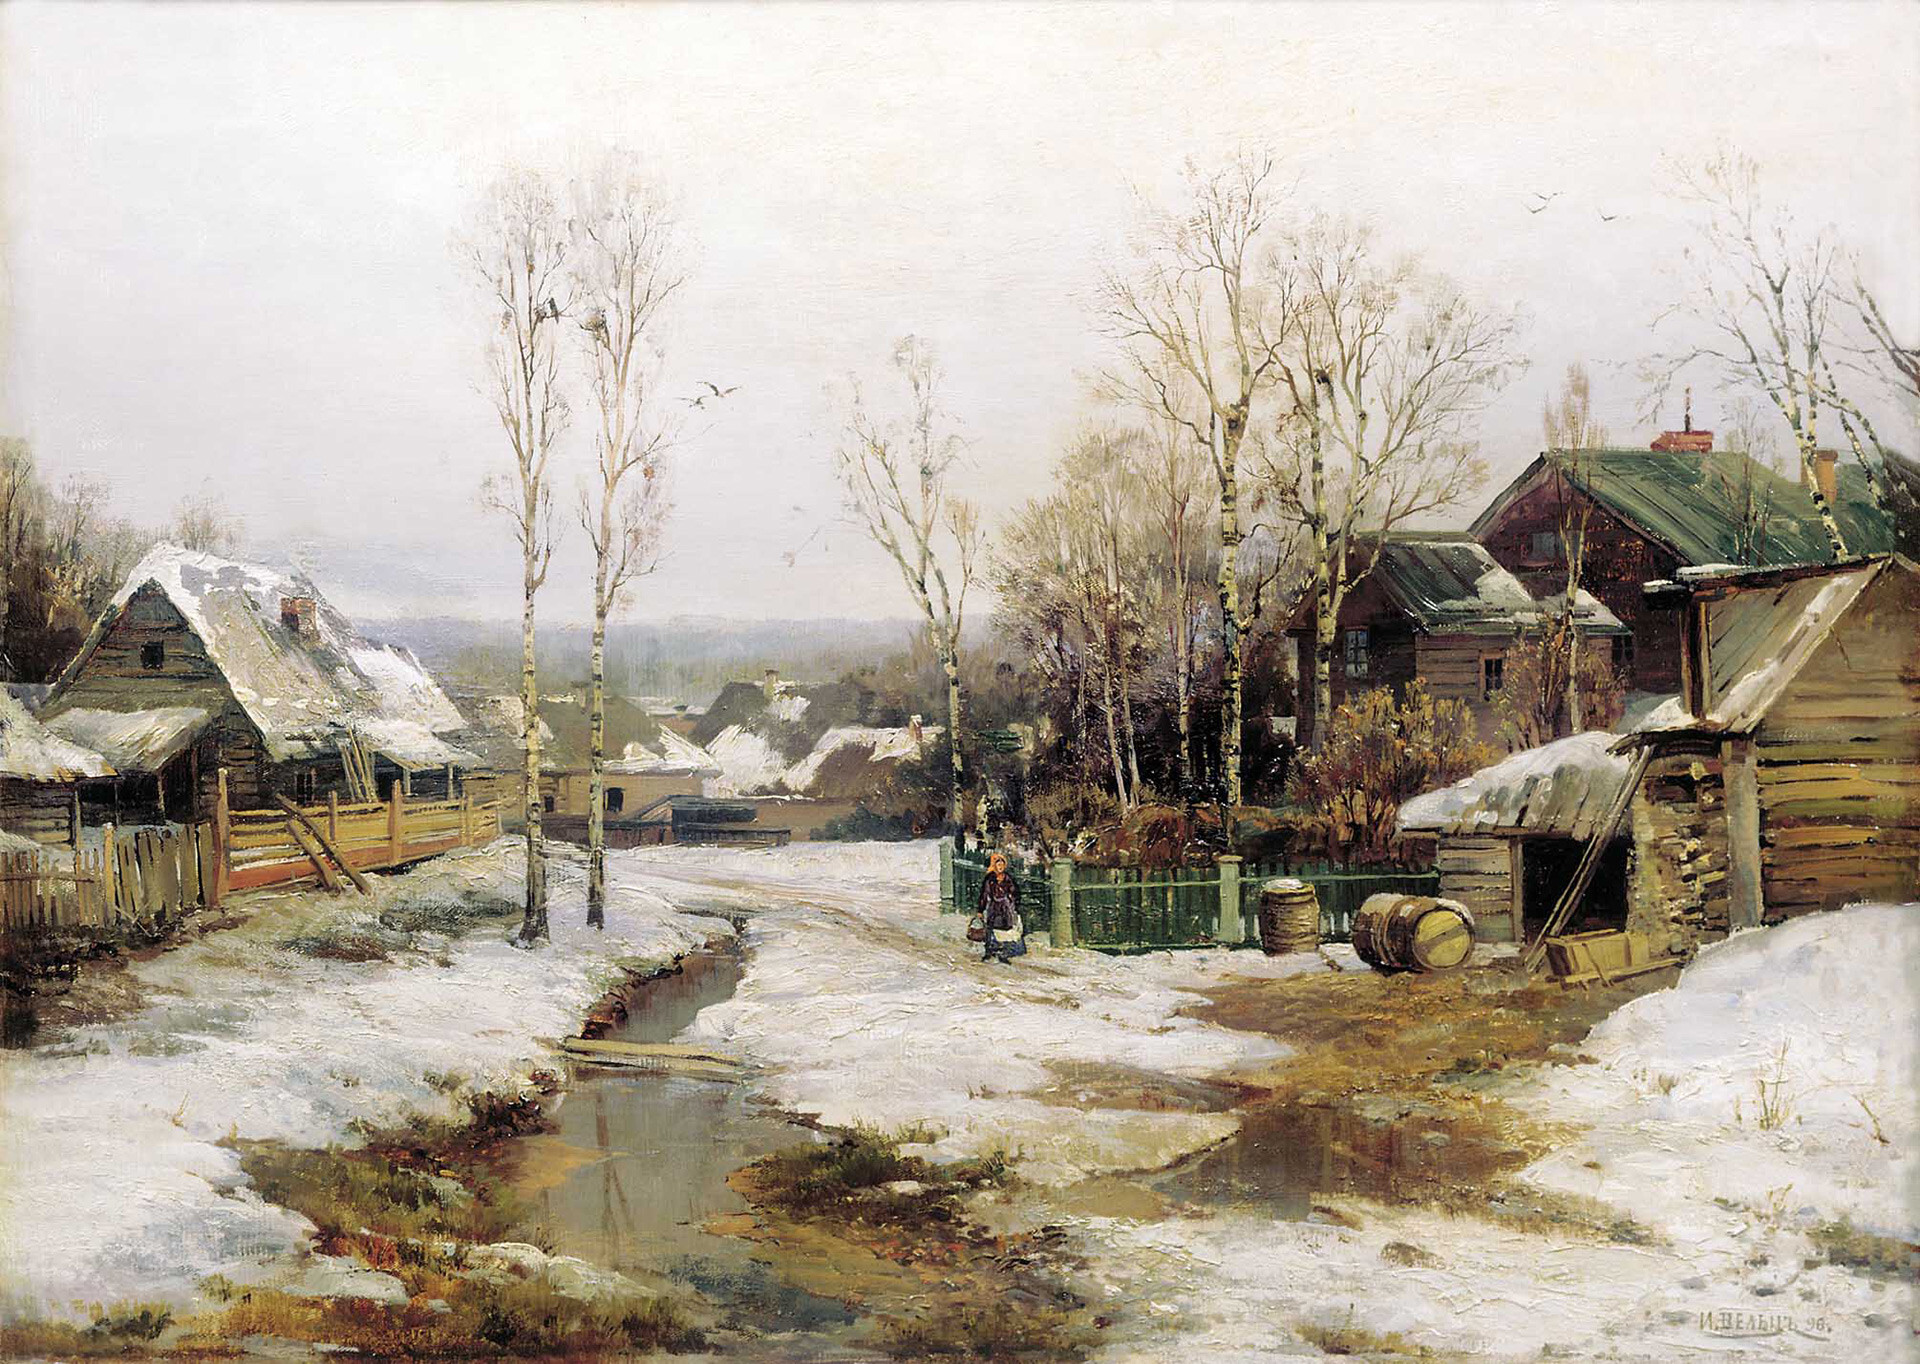 “Primavera cerca de San Petersburgo”, 1896, Ivan Welz.

